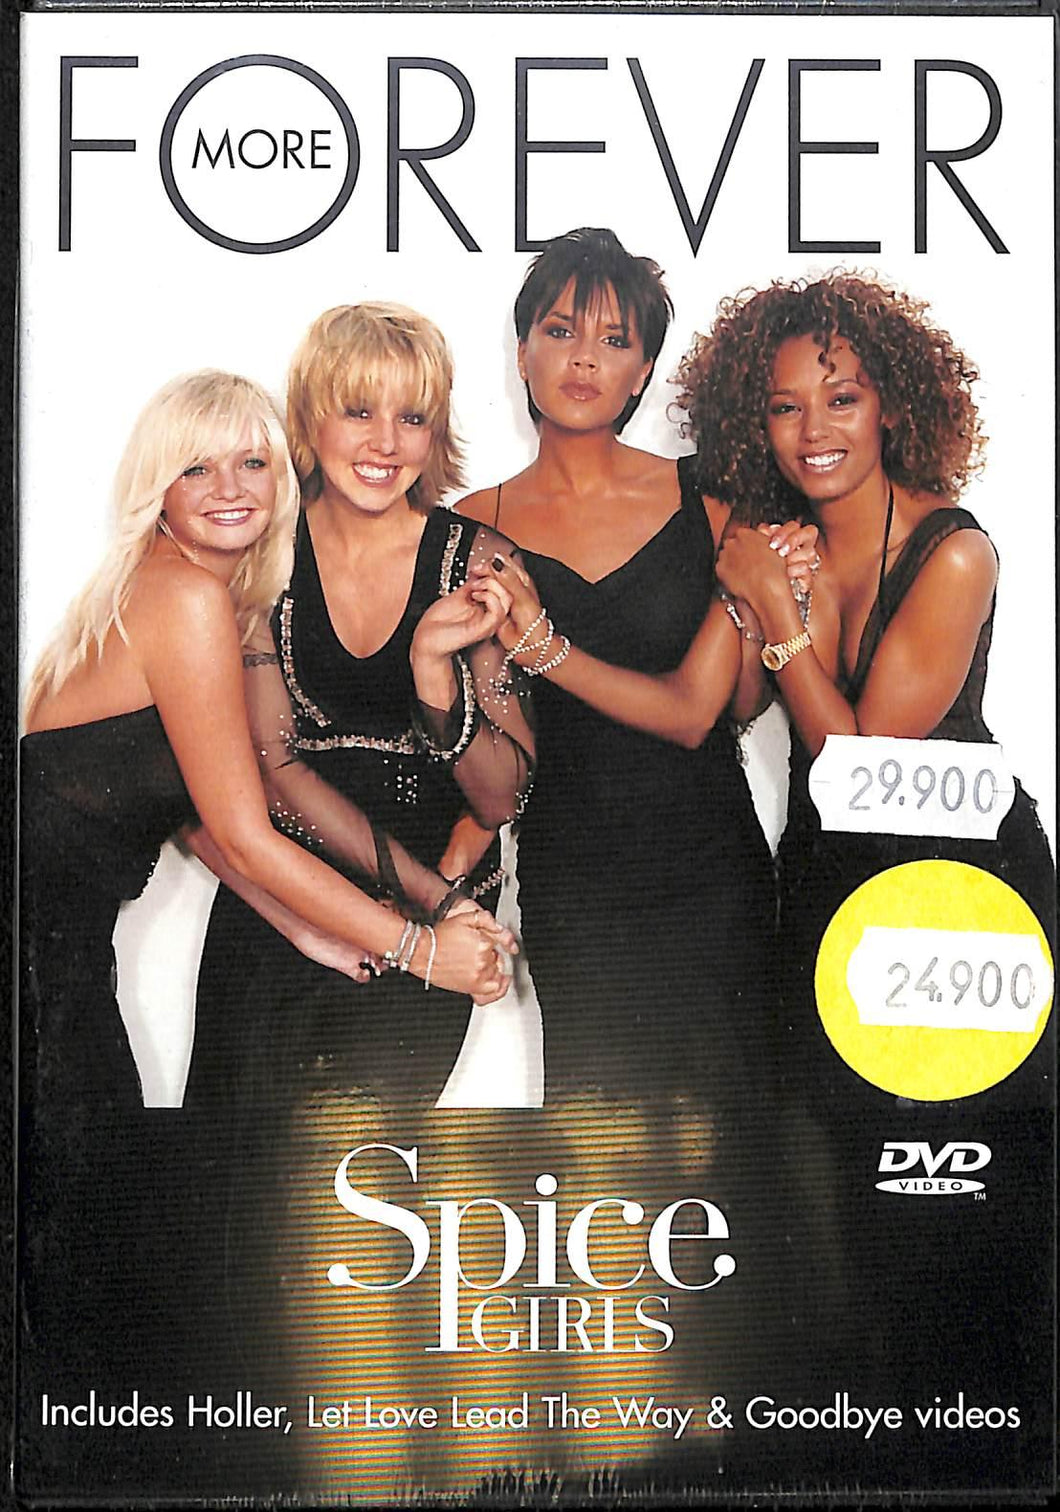 Dvd - Spice Girls - Forever More